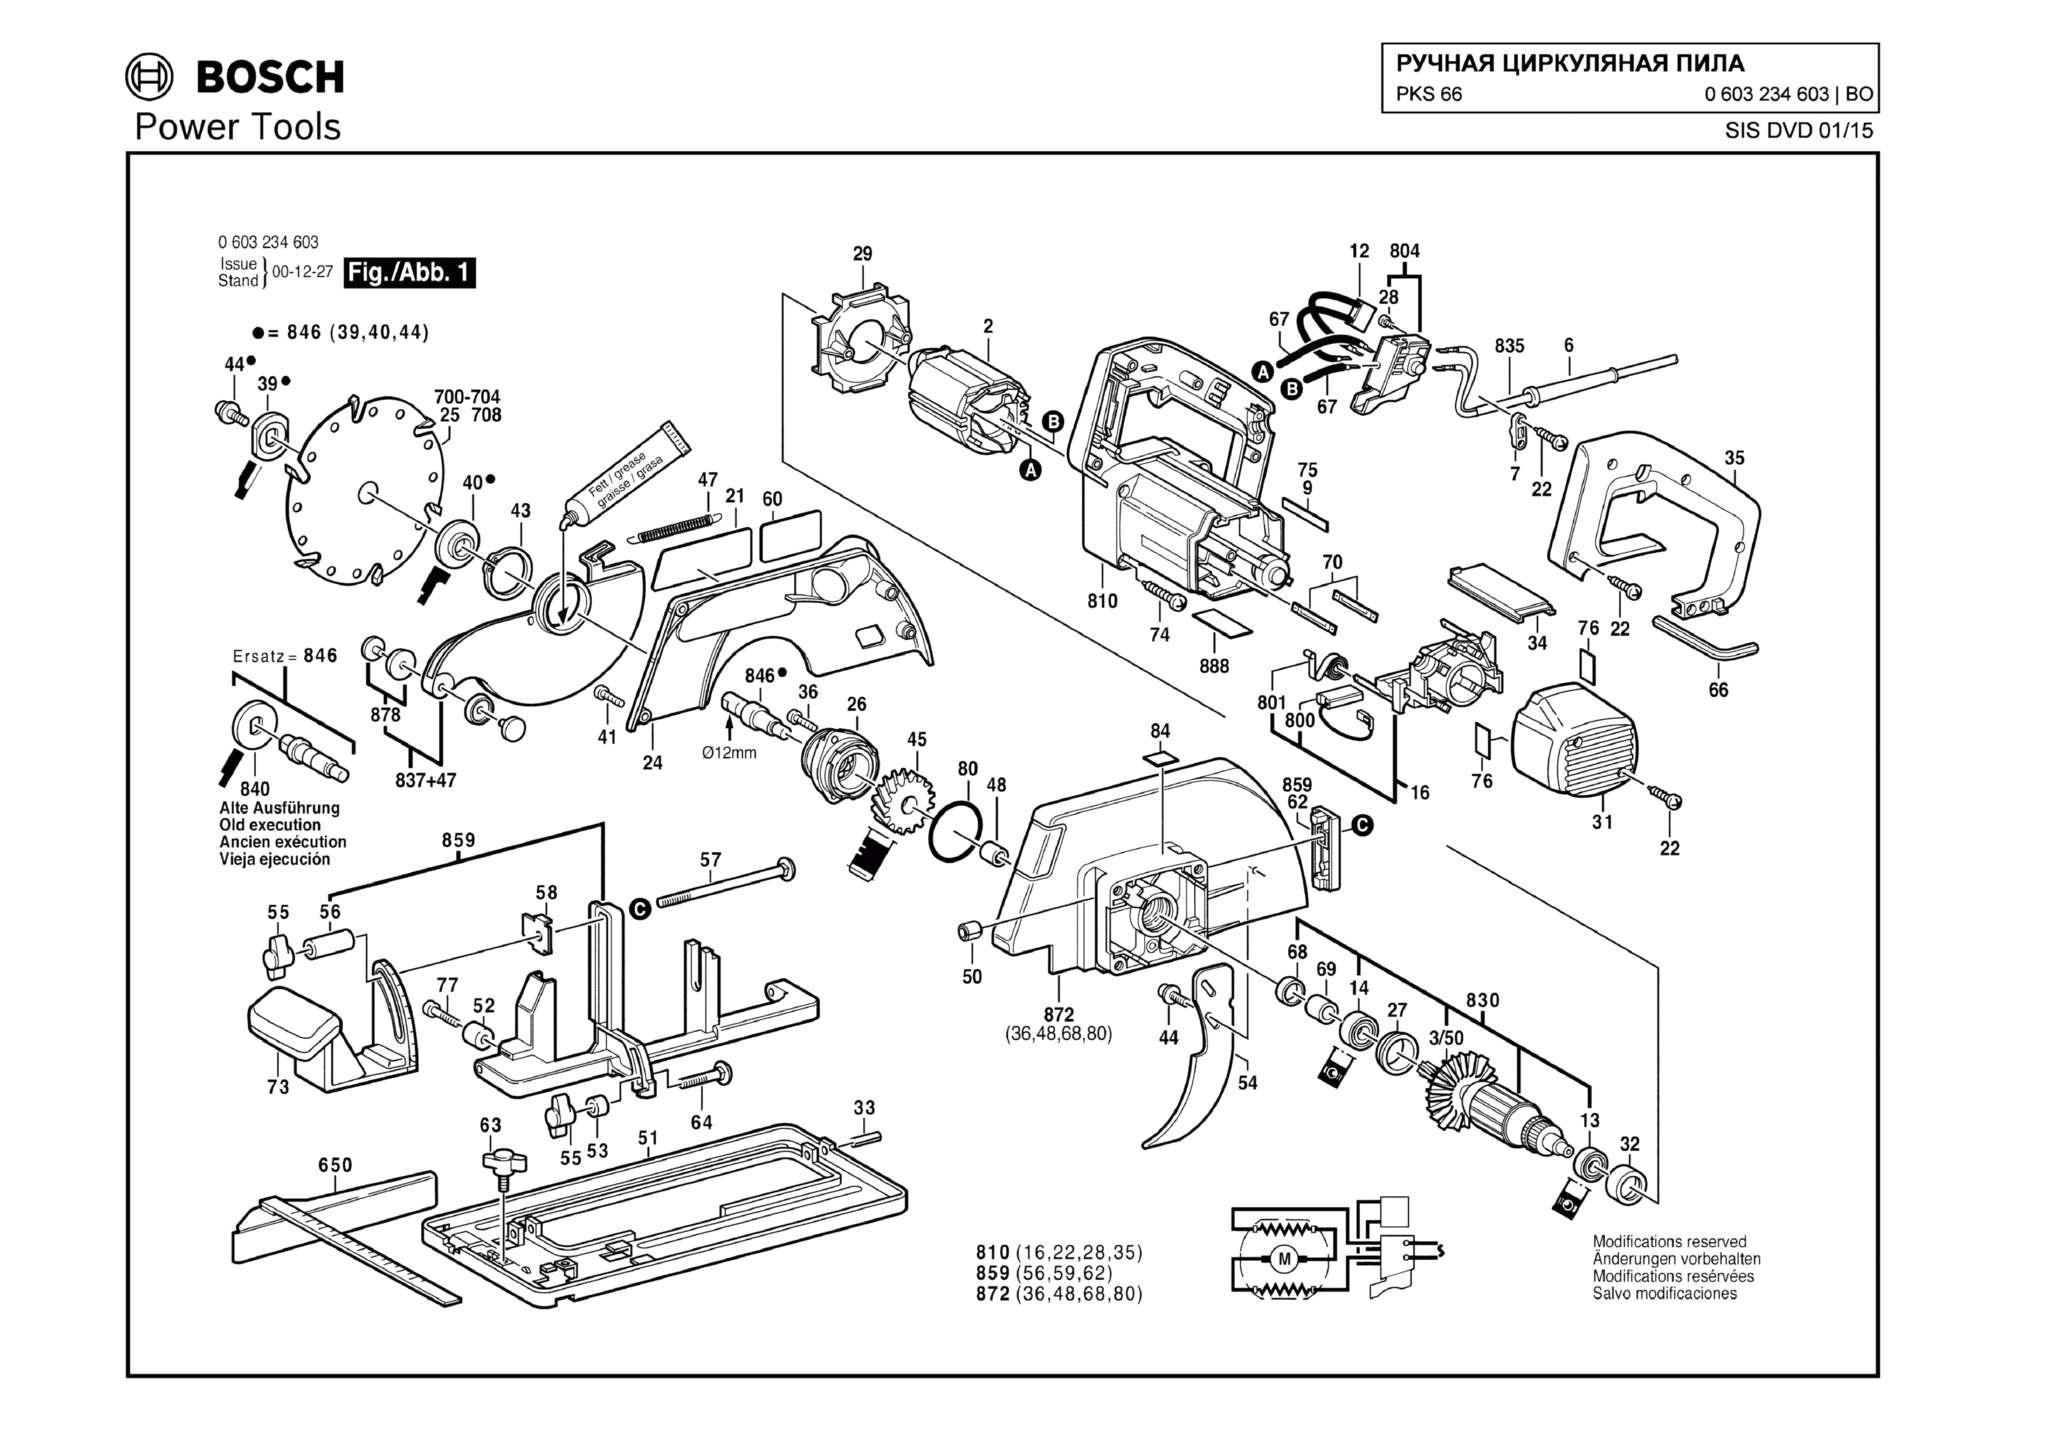 Запчасти, схема и деталировка Bosch PKS 66 (ТИП 0603234603)